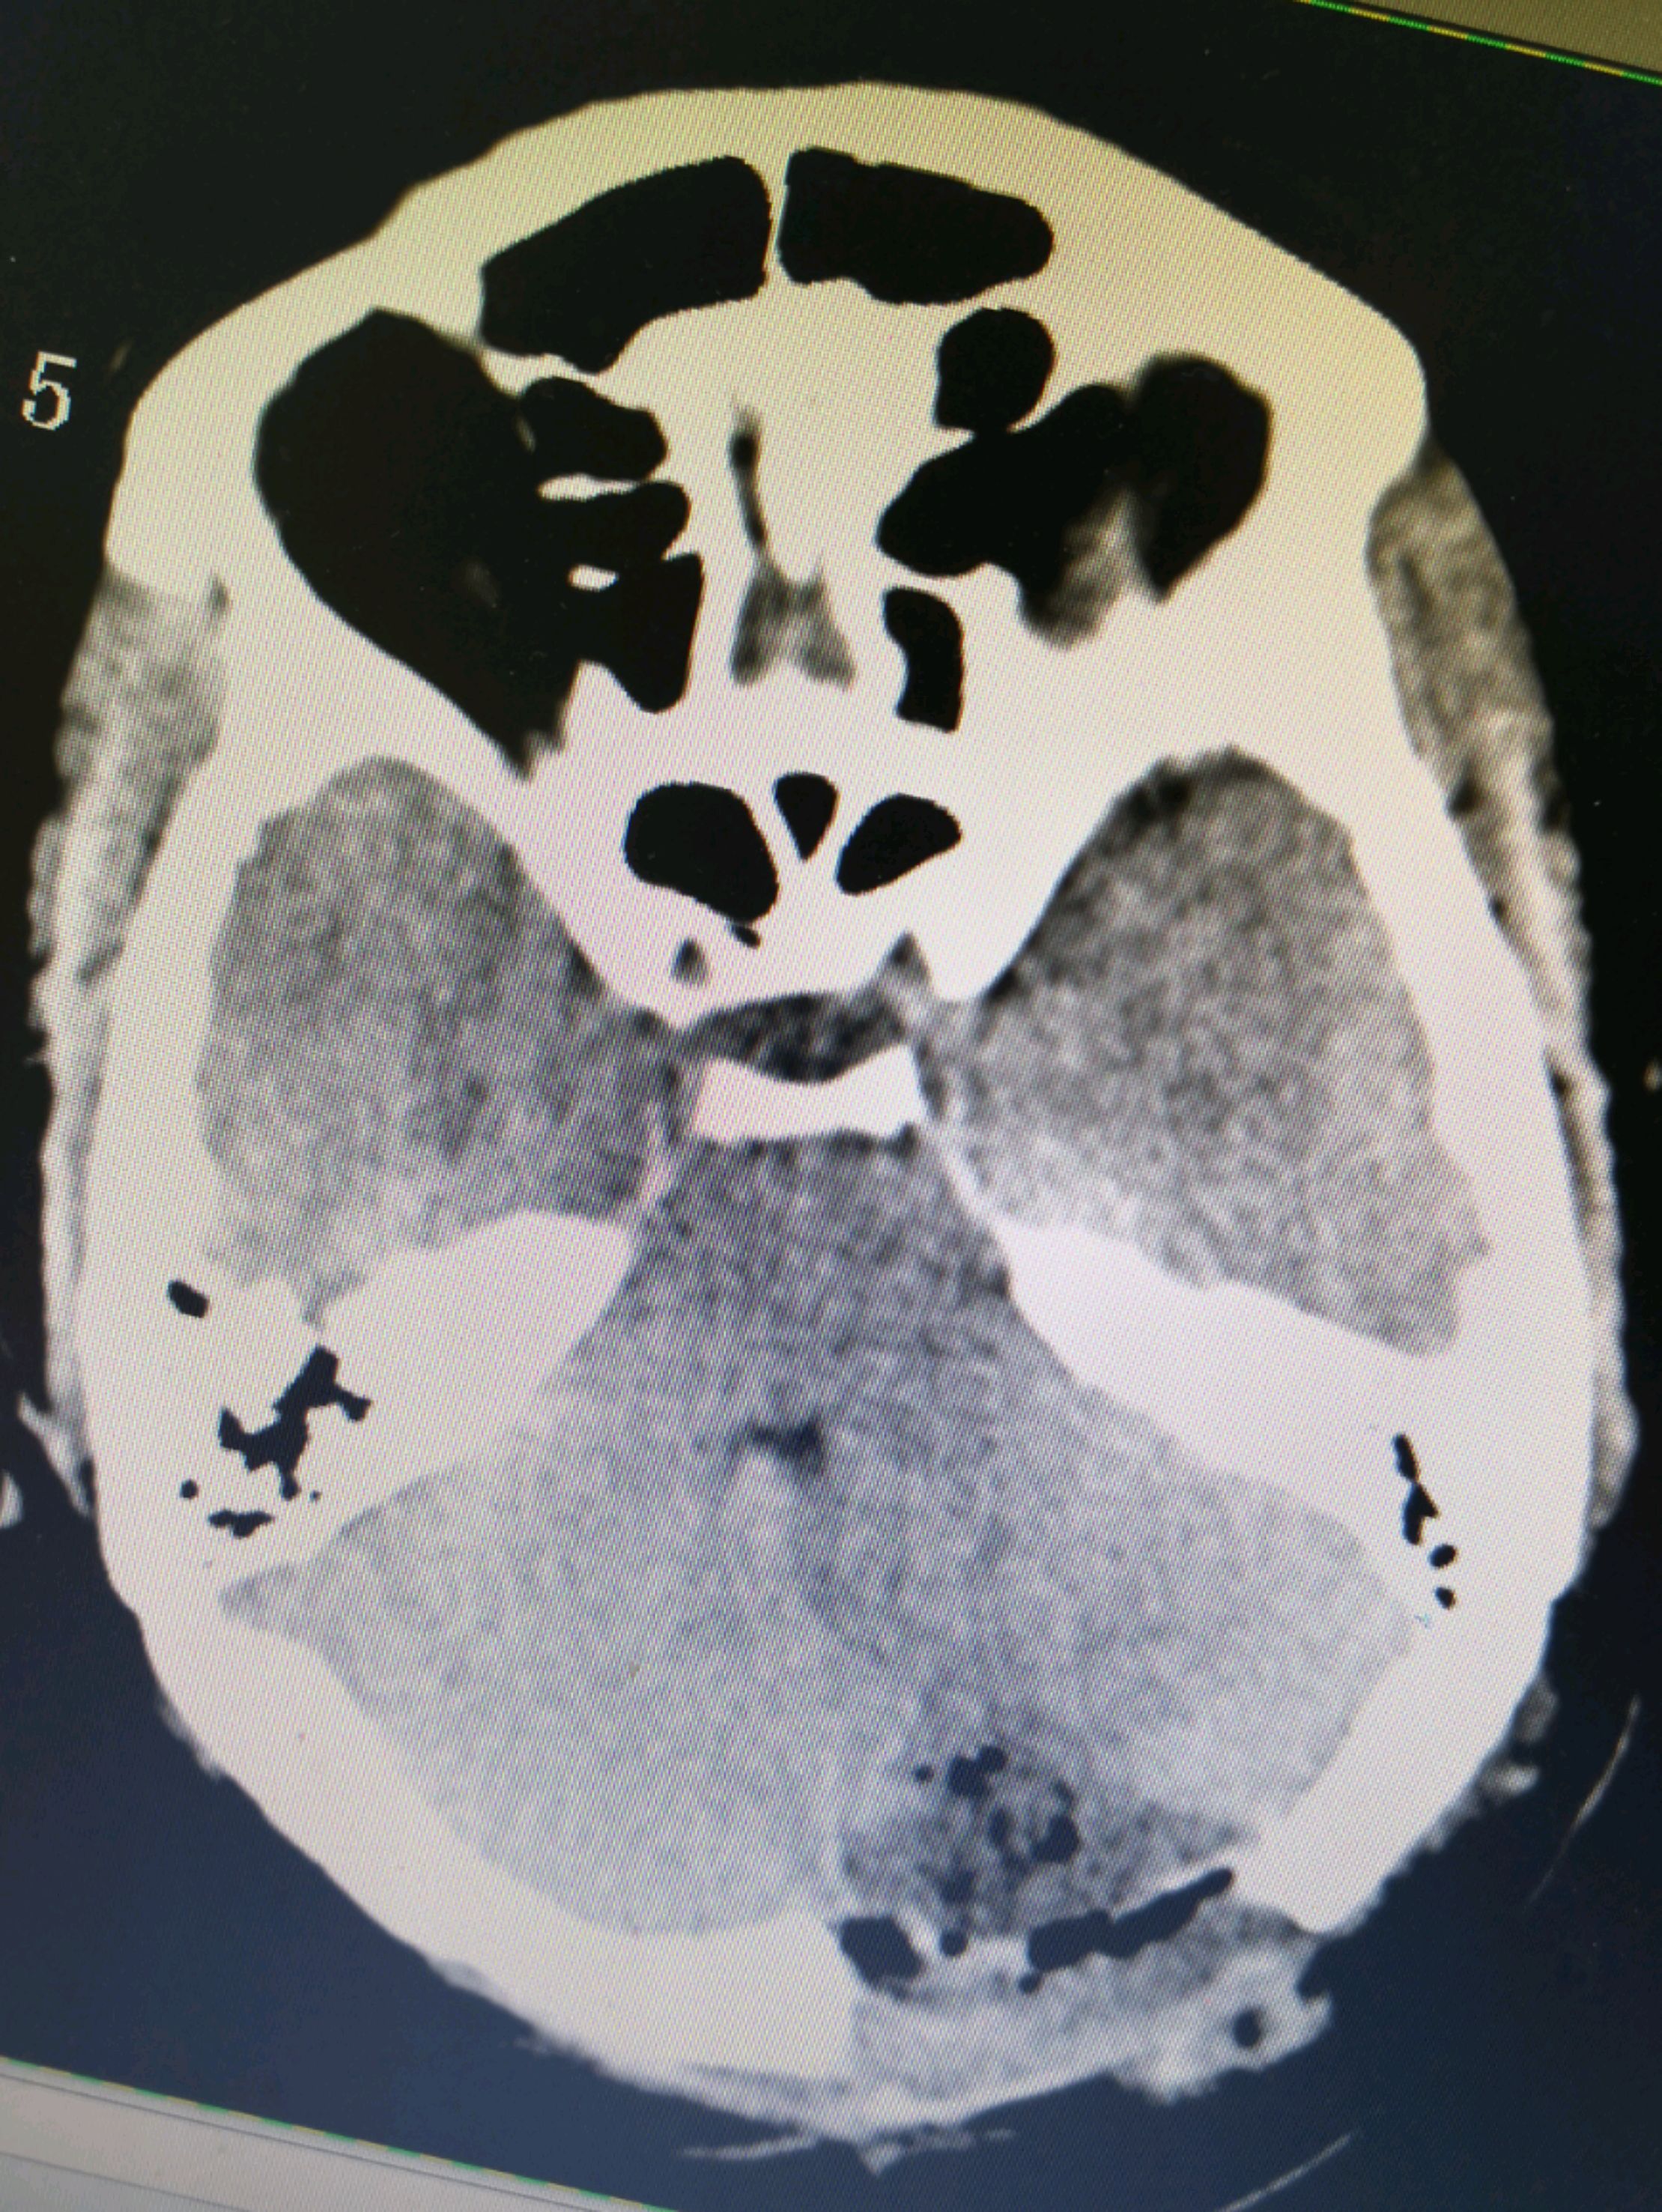 脑膜瘤MRI图片